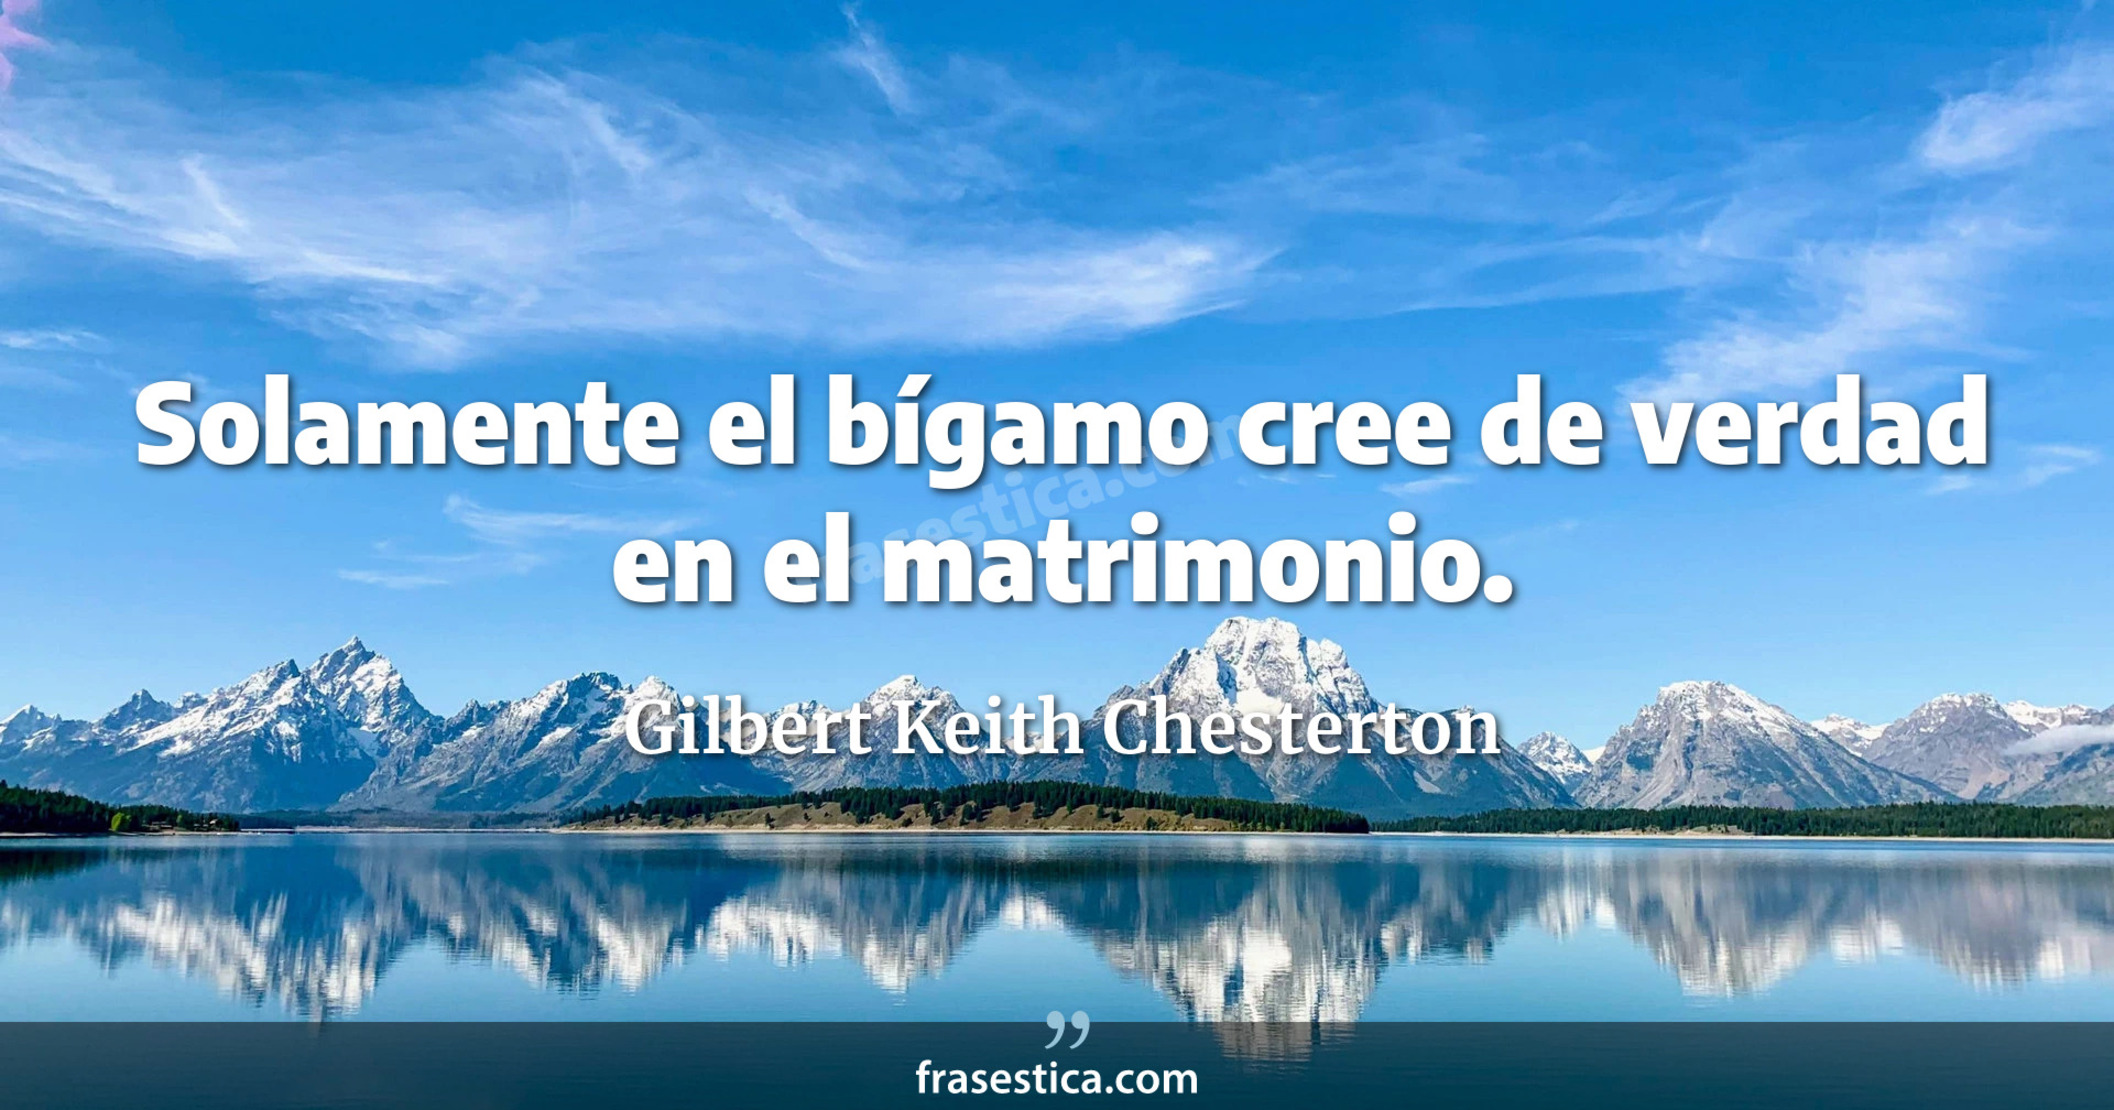 Solamente el bígamo cree de verdad en el matrimonio. - Gilbert Keith Chesterton